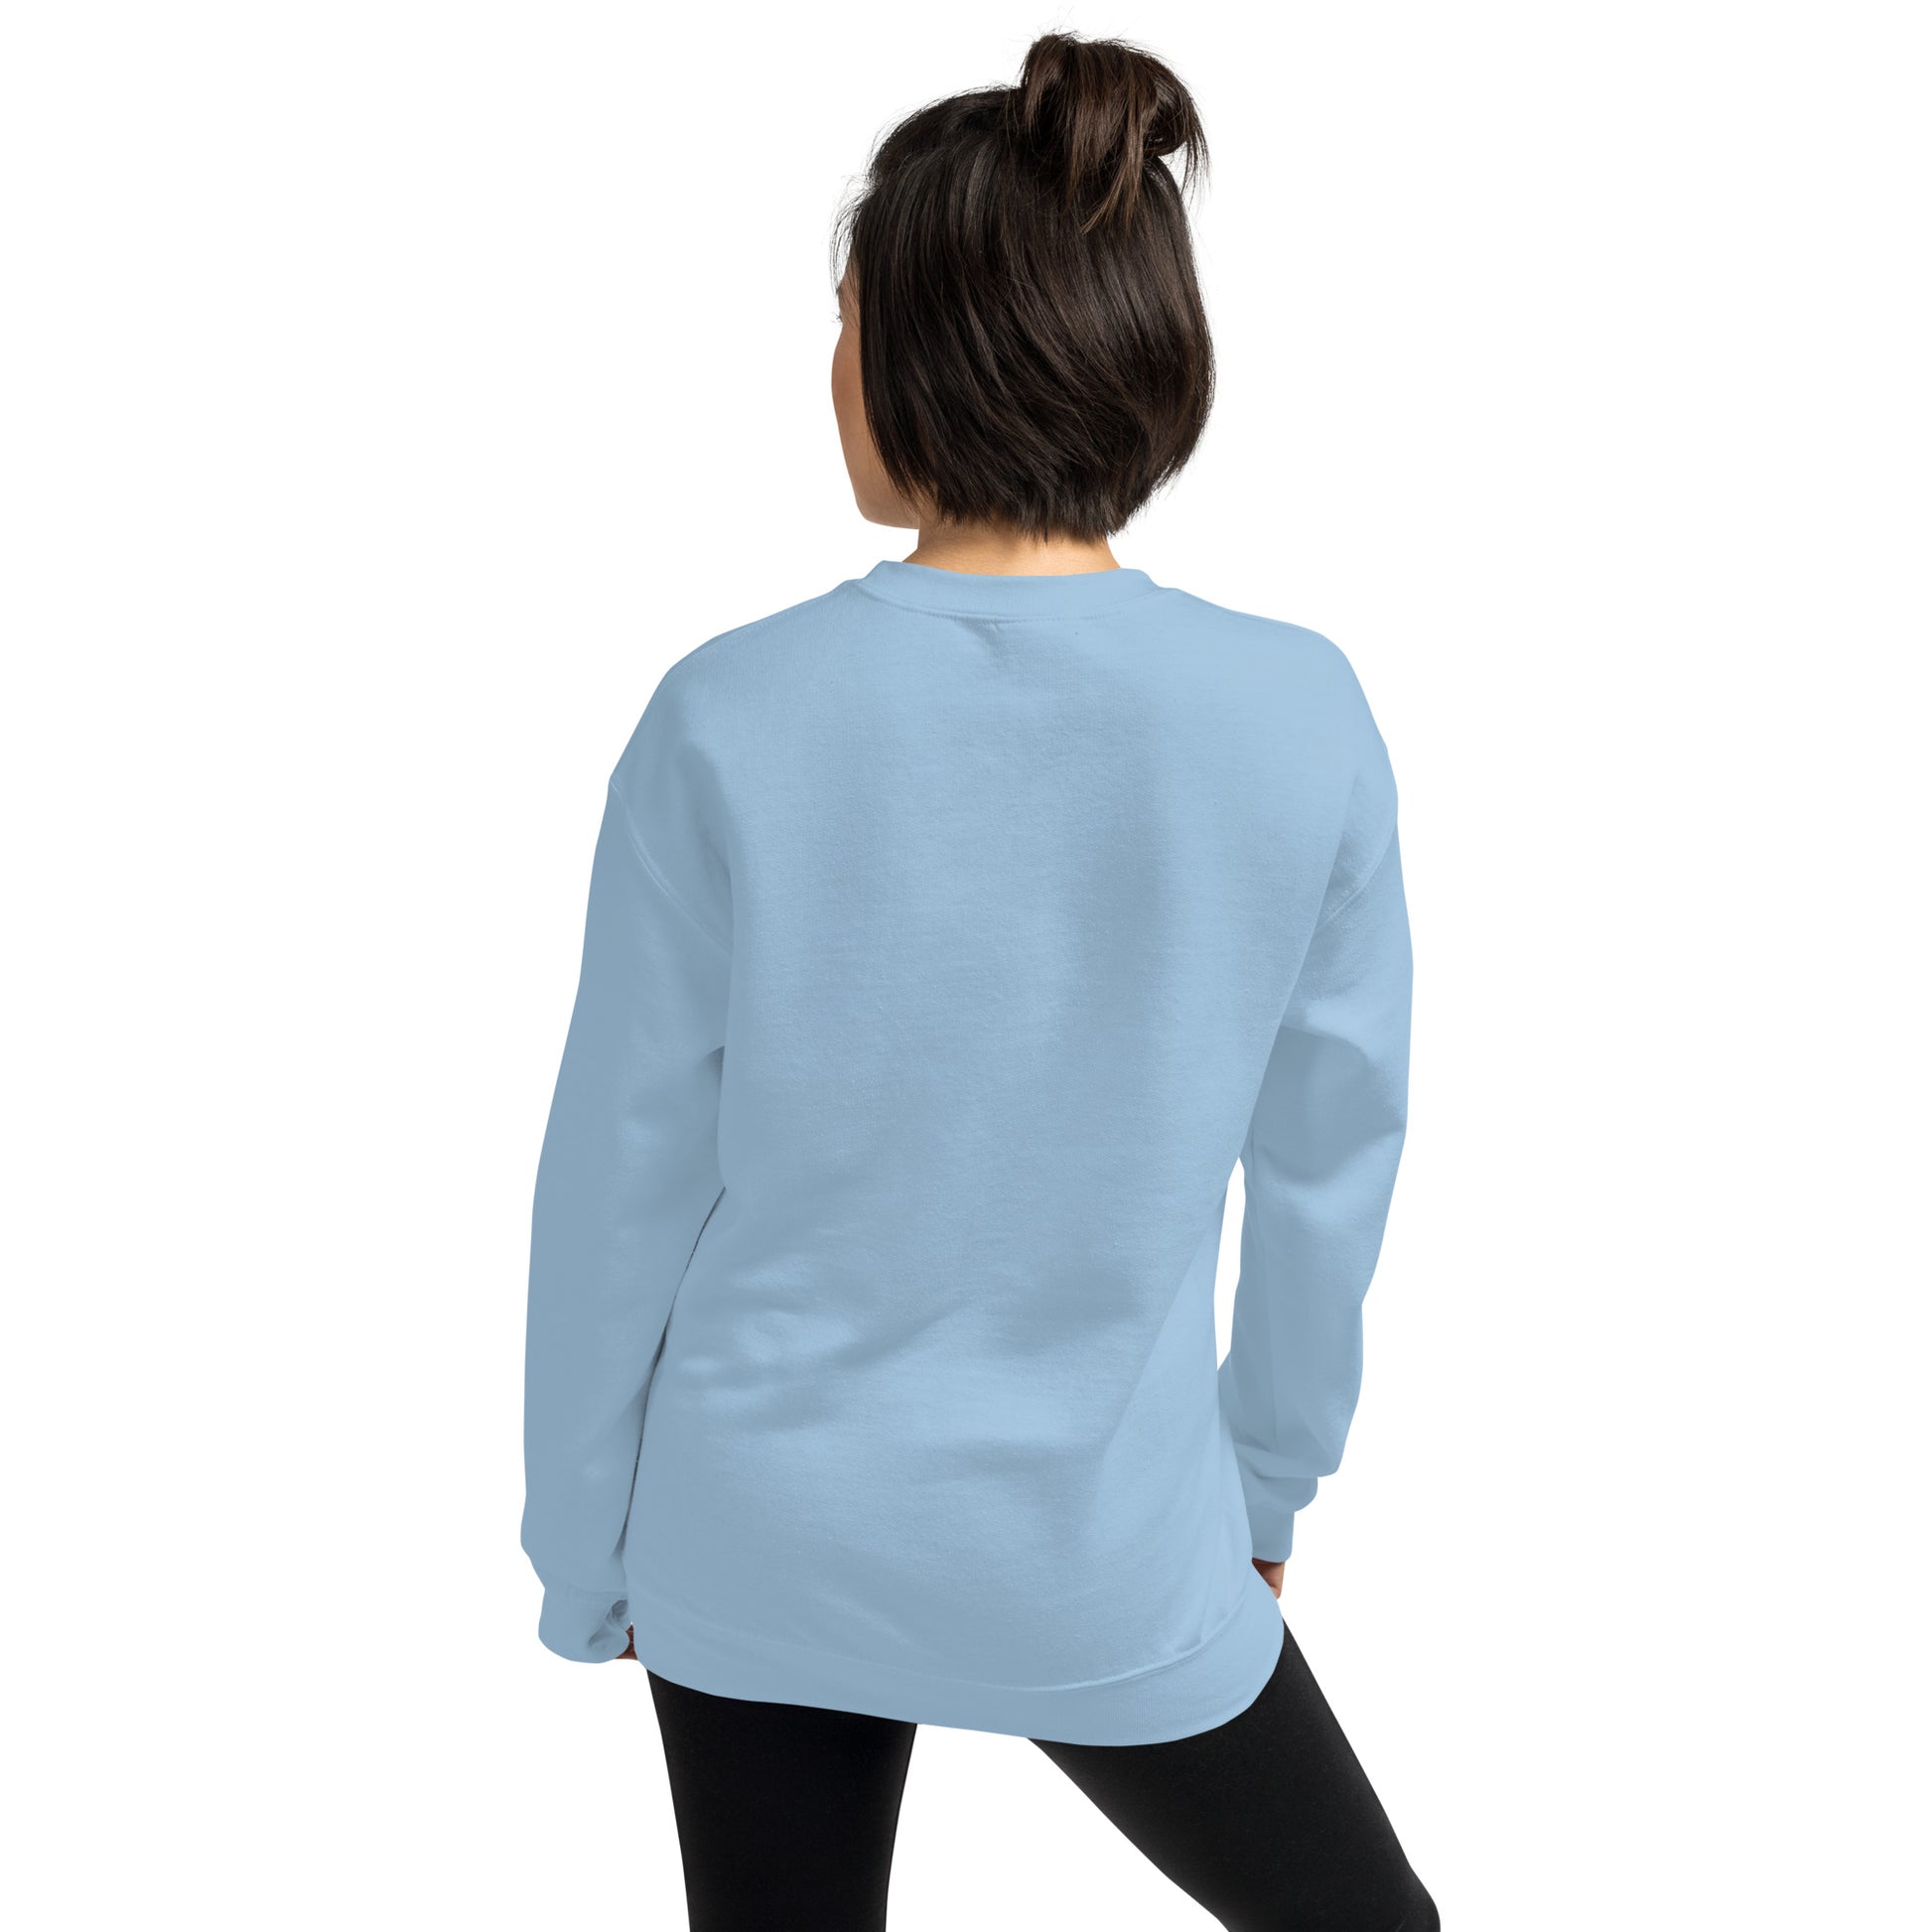 Butterfly Sweatshirt For Women / Custom Text Blue Sweatshirt For The Patriotic Butterfly Lover Back Side